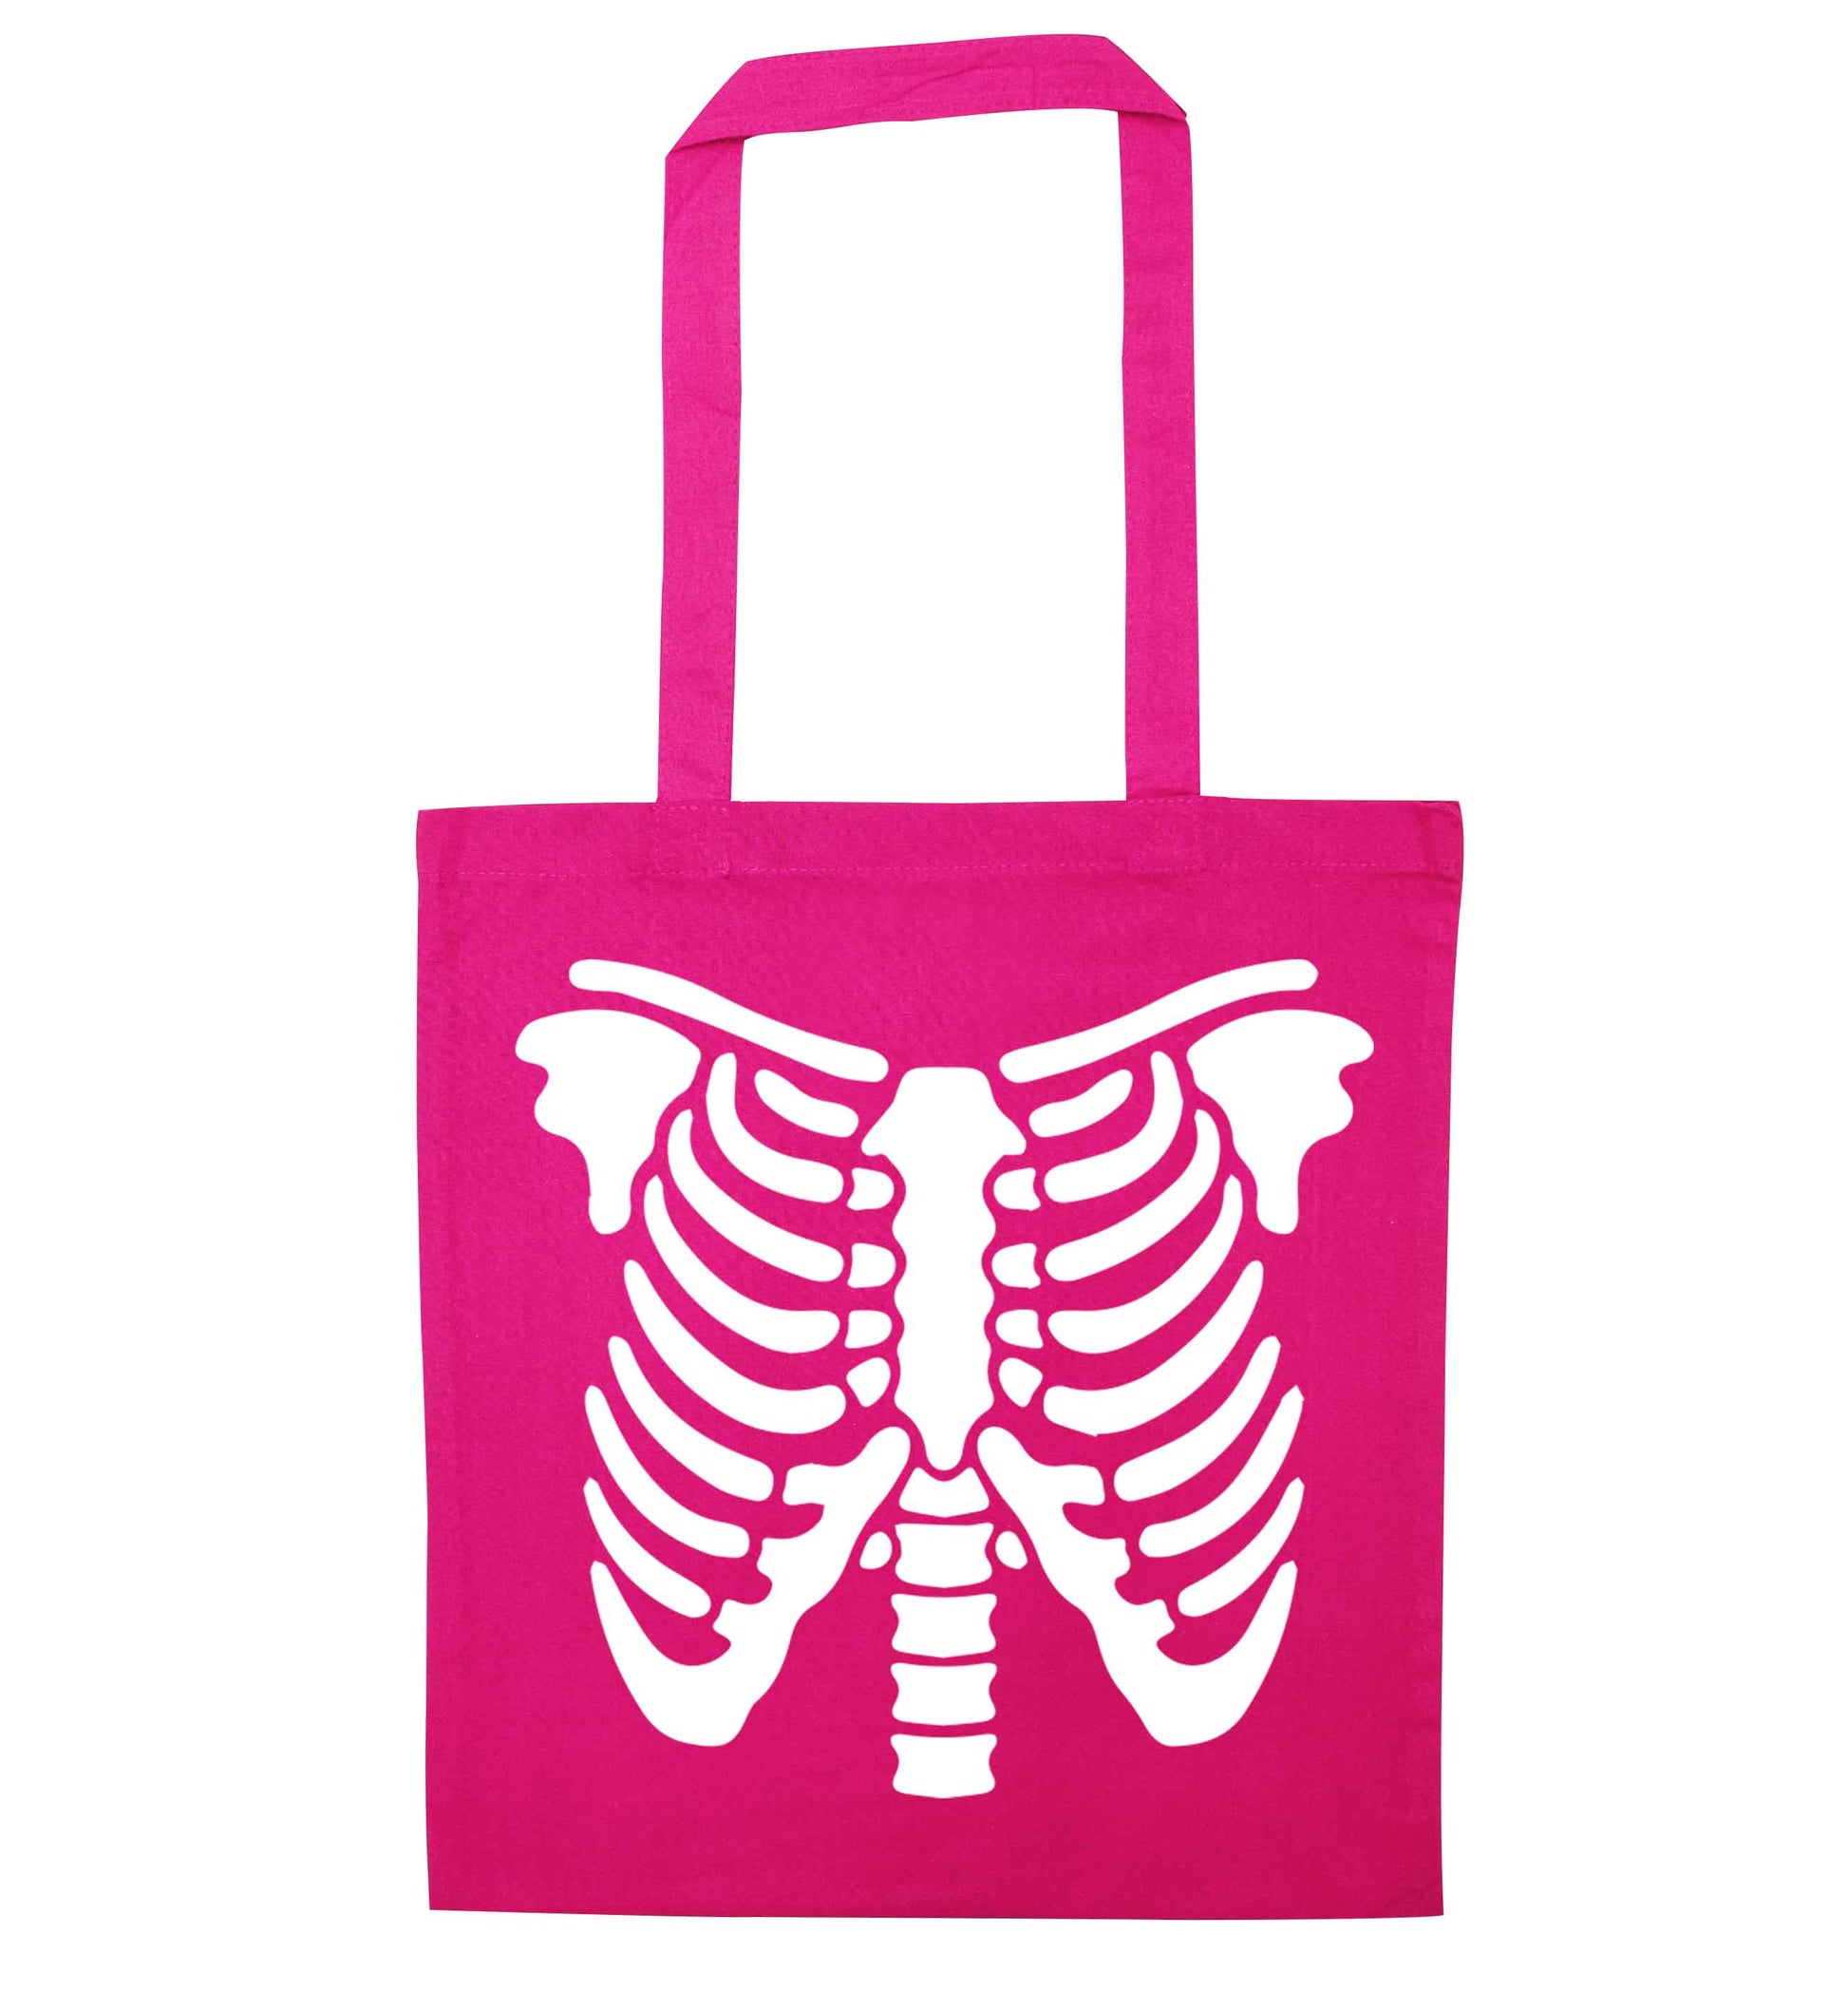 Skeleton ribcage pink tote bag